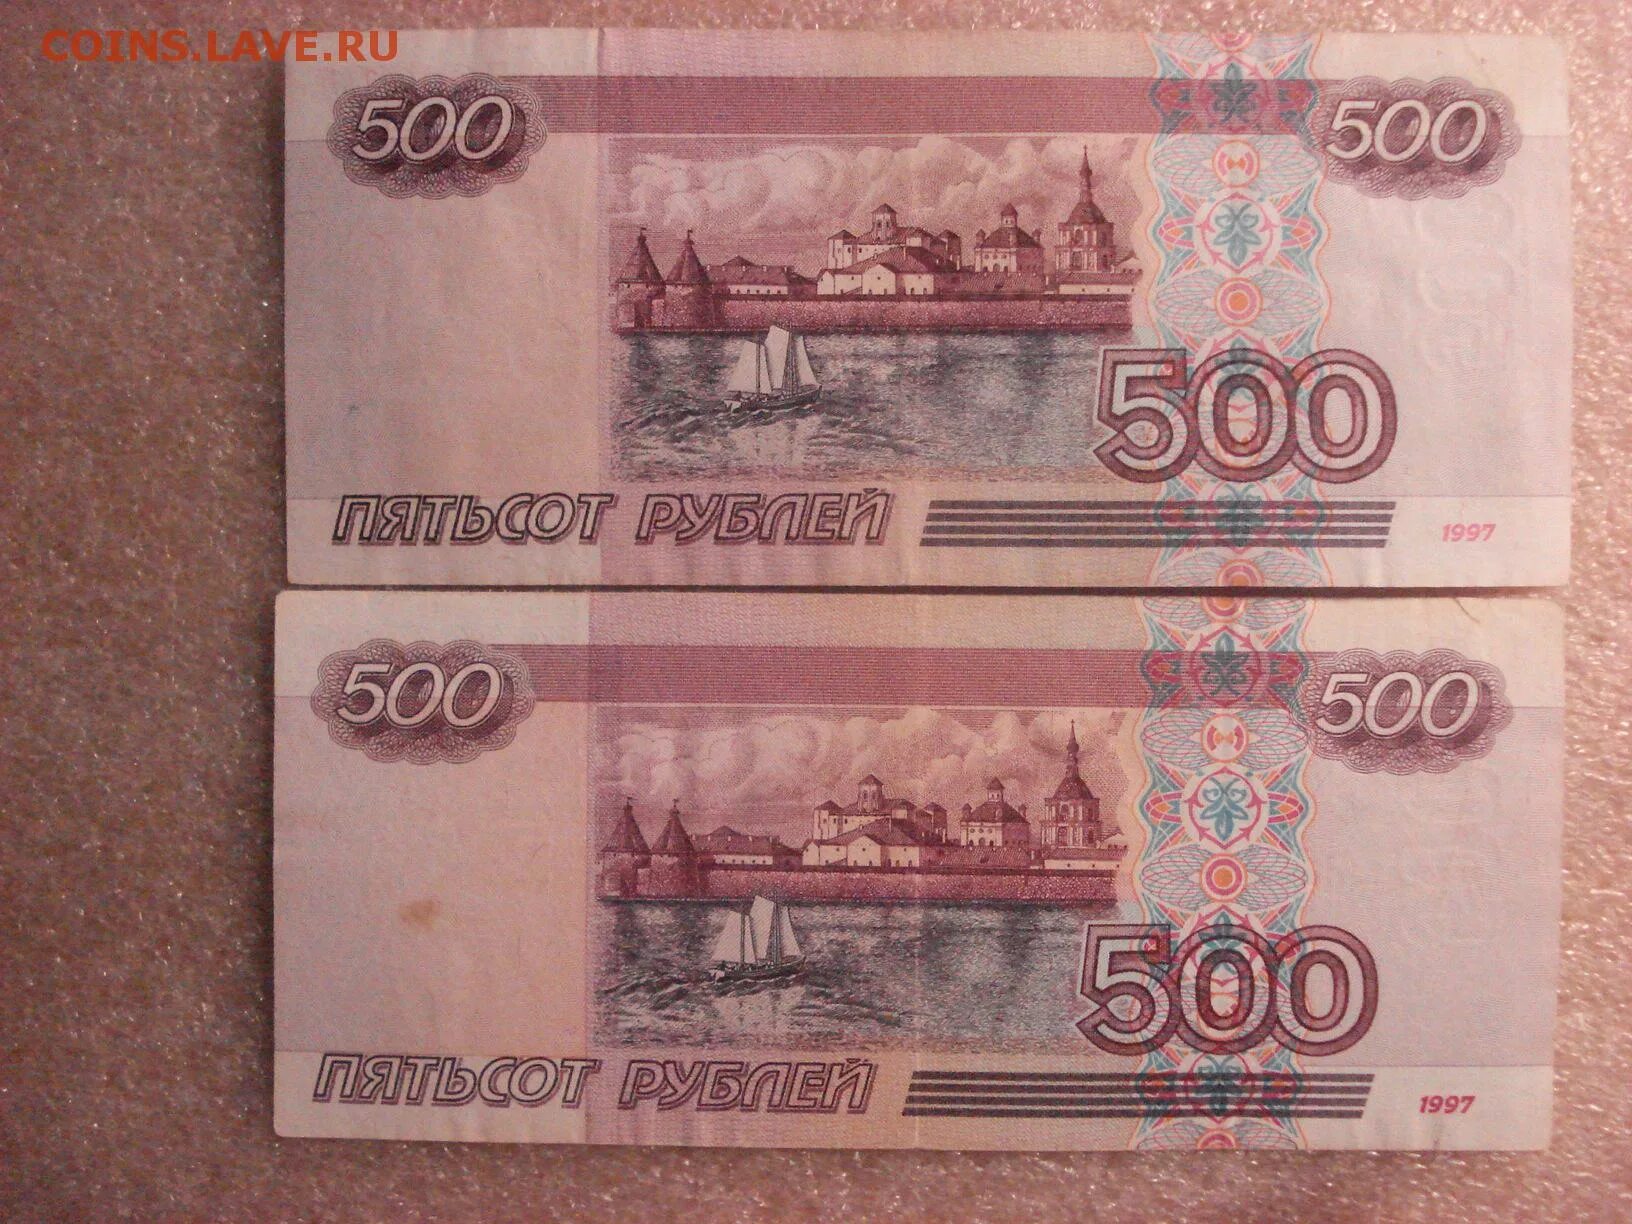 19 500 в рублях. 500р 1997 года без модификации. Купюра 500 рублей. 500 Рублей 1997. 500 И 1000 рублей.